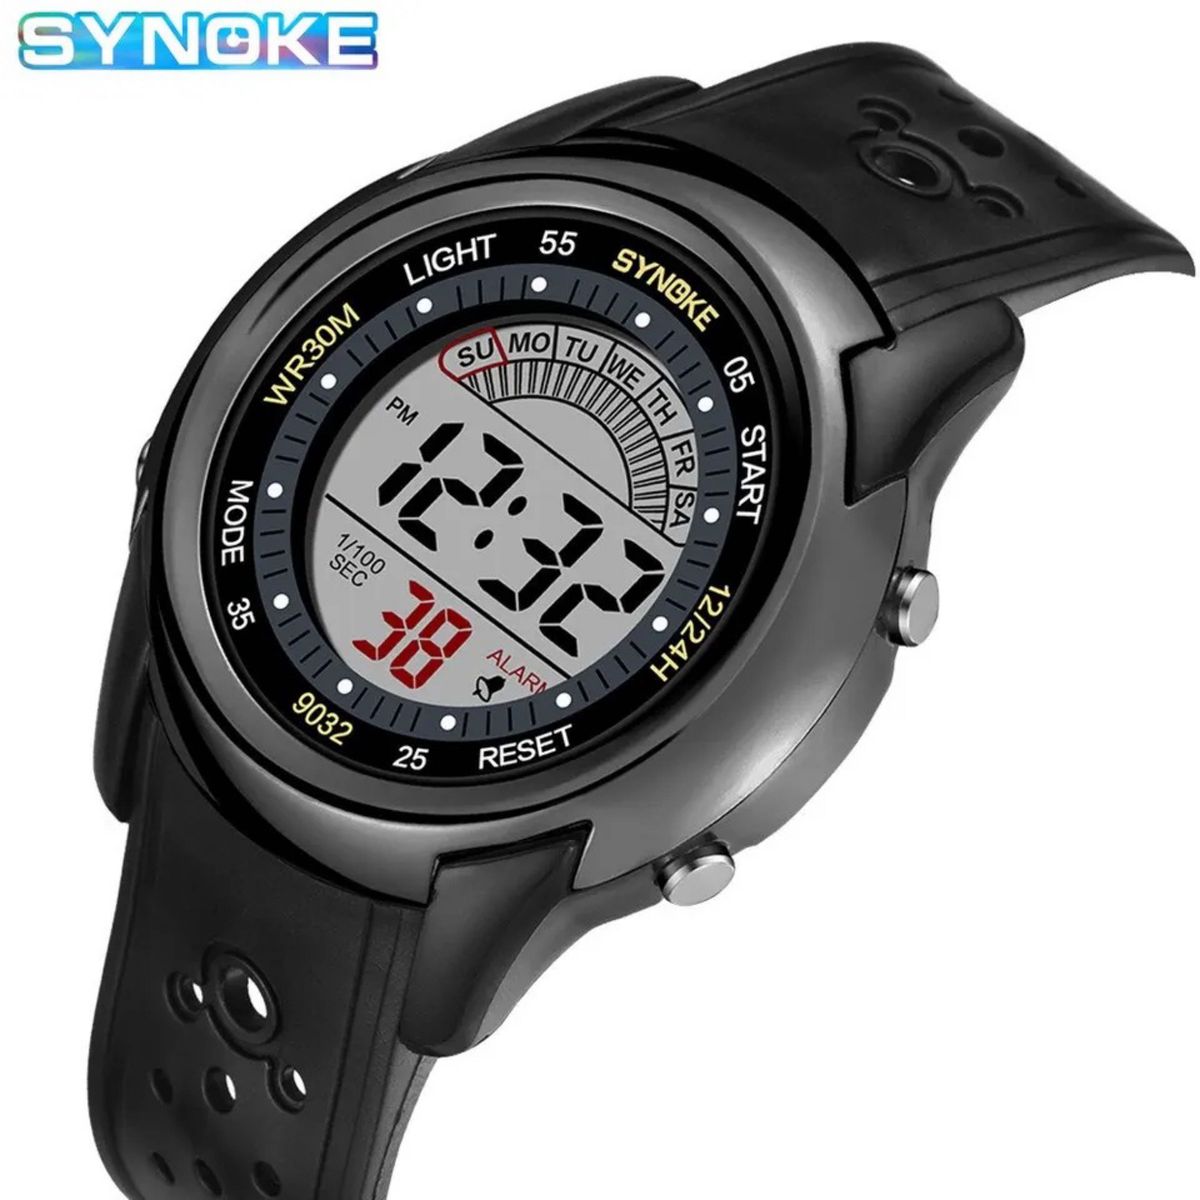 新品 SYNOKEスポーツデジタル 防水 デジタルストップウォッチ メンズ腕時計 9032 ブラック